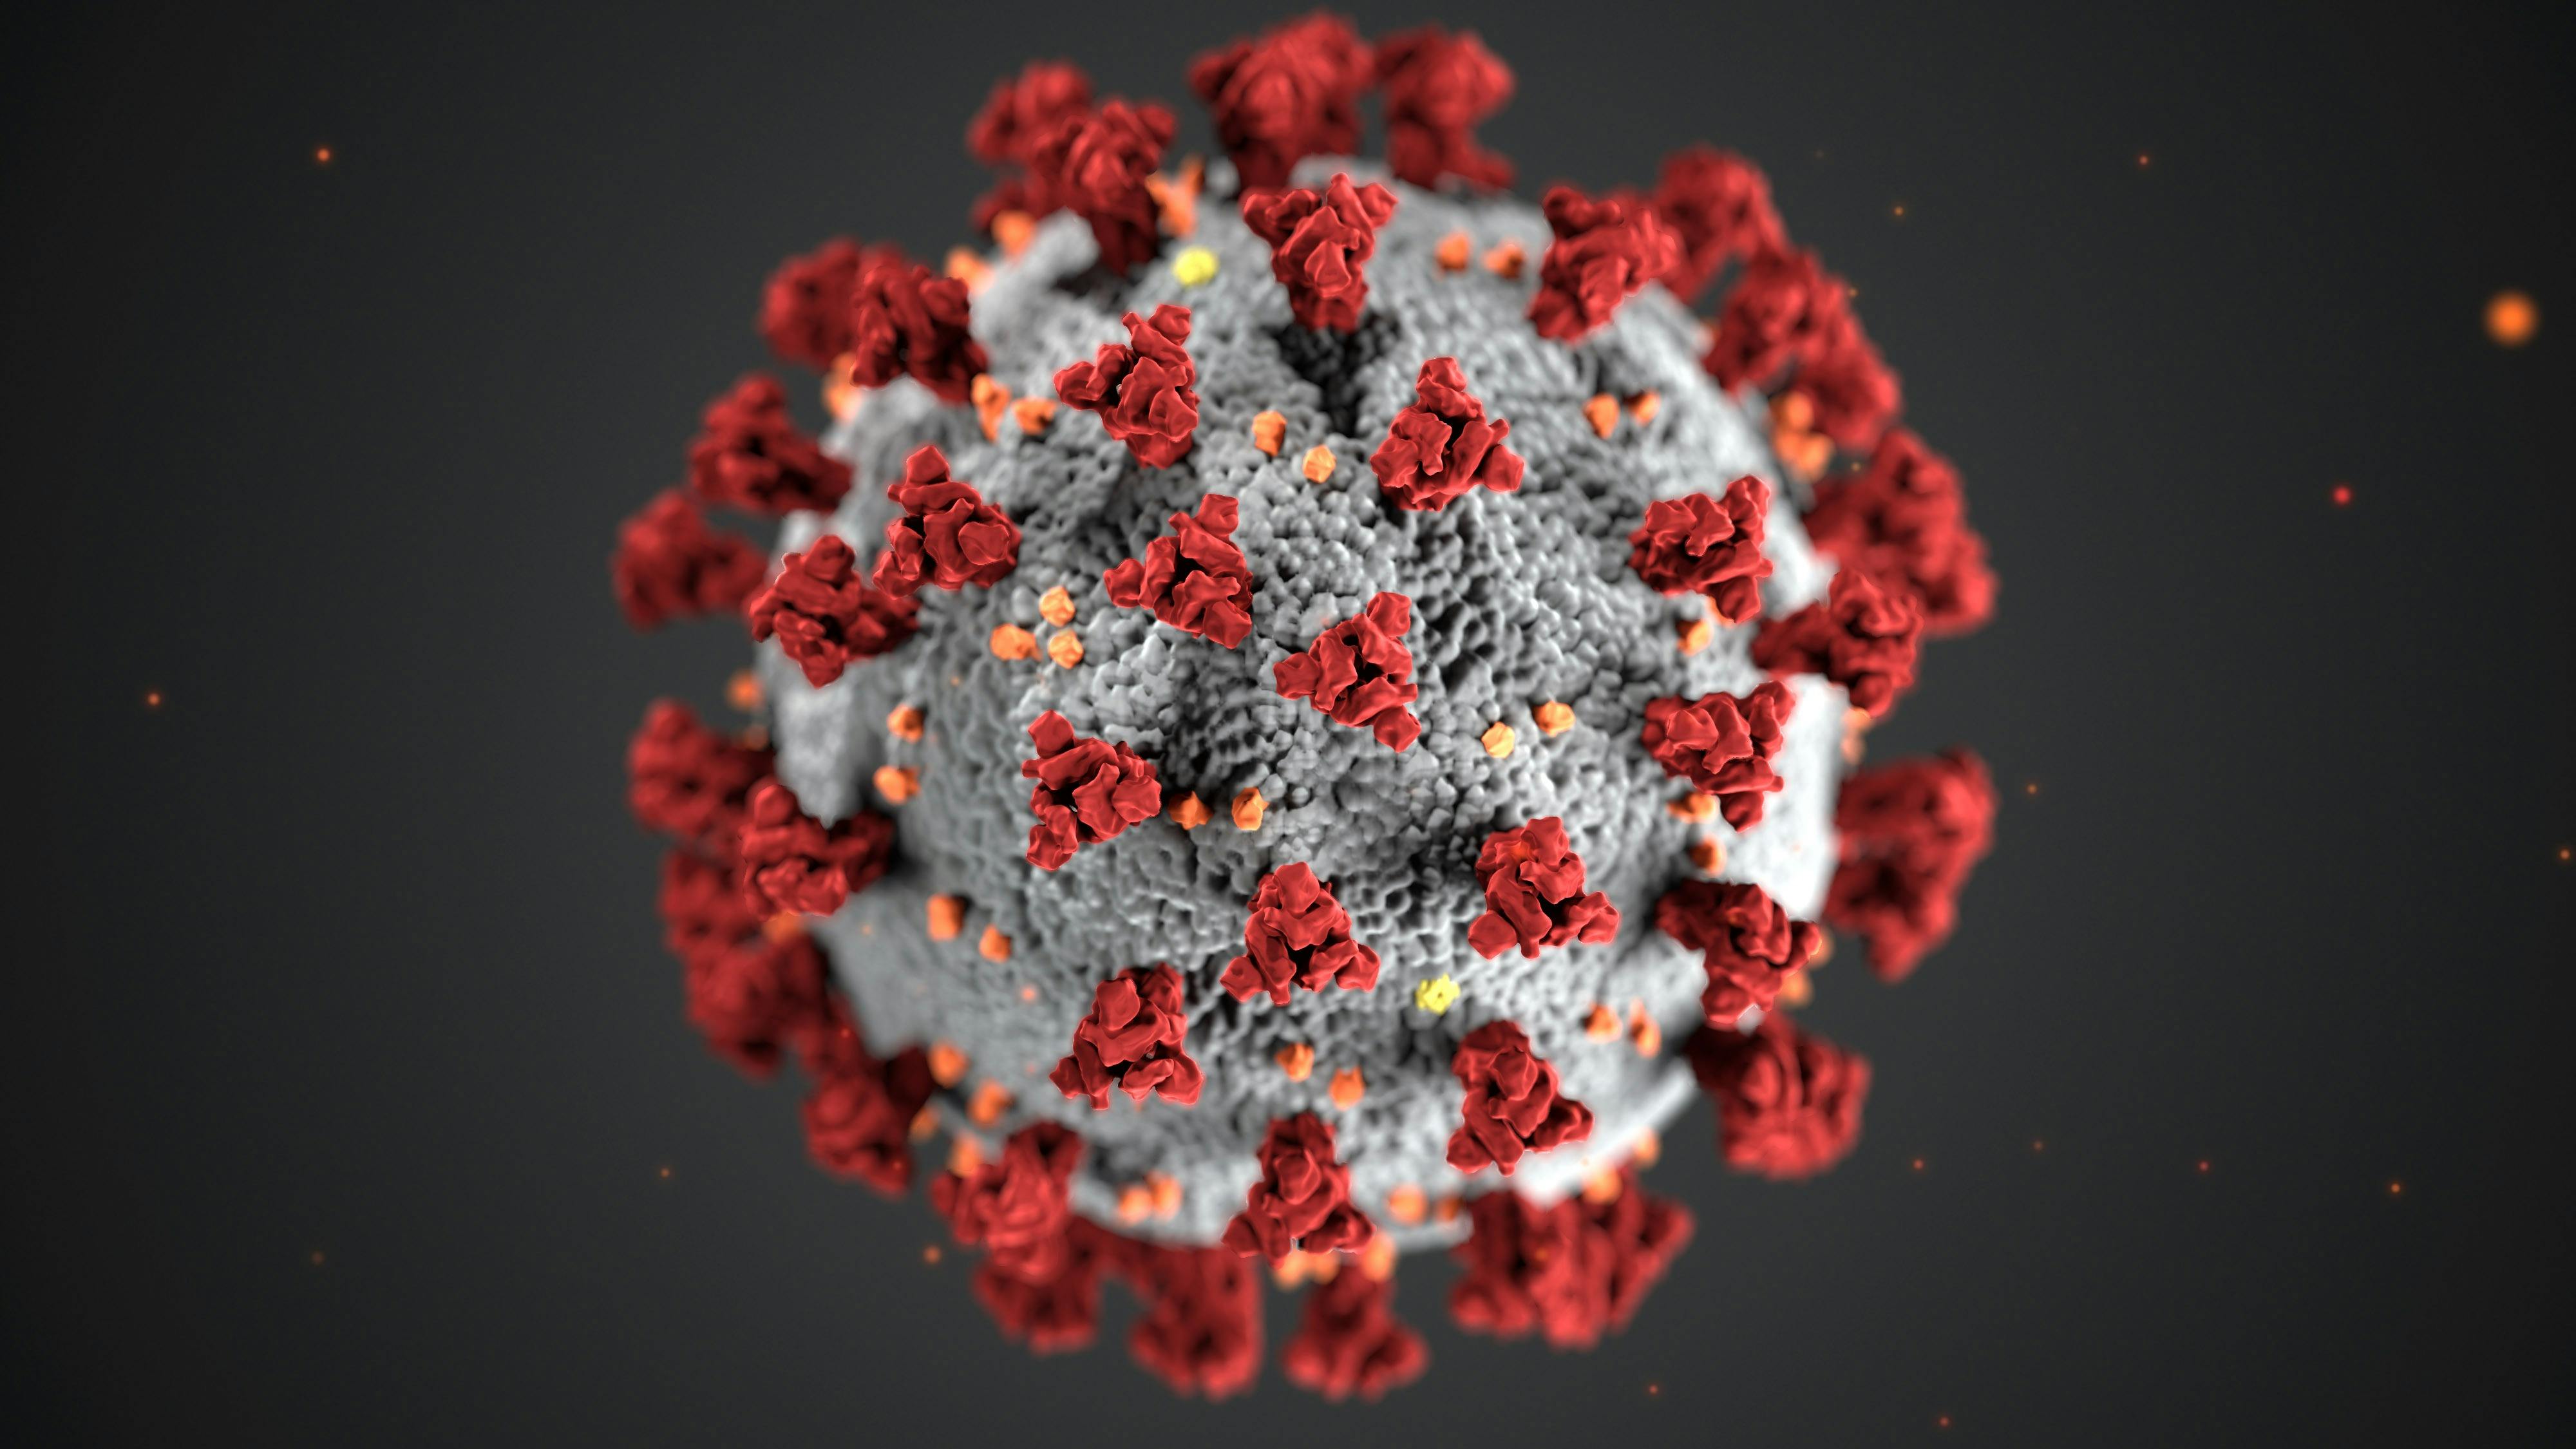 Sundhedsstyrelsen sidestiller coronavirus med andre sygdomme og anbefaler ikke længere, at man isolerer sig ved positiv test. Det fremgår af pressemeddelelse.